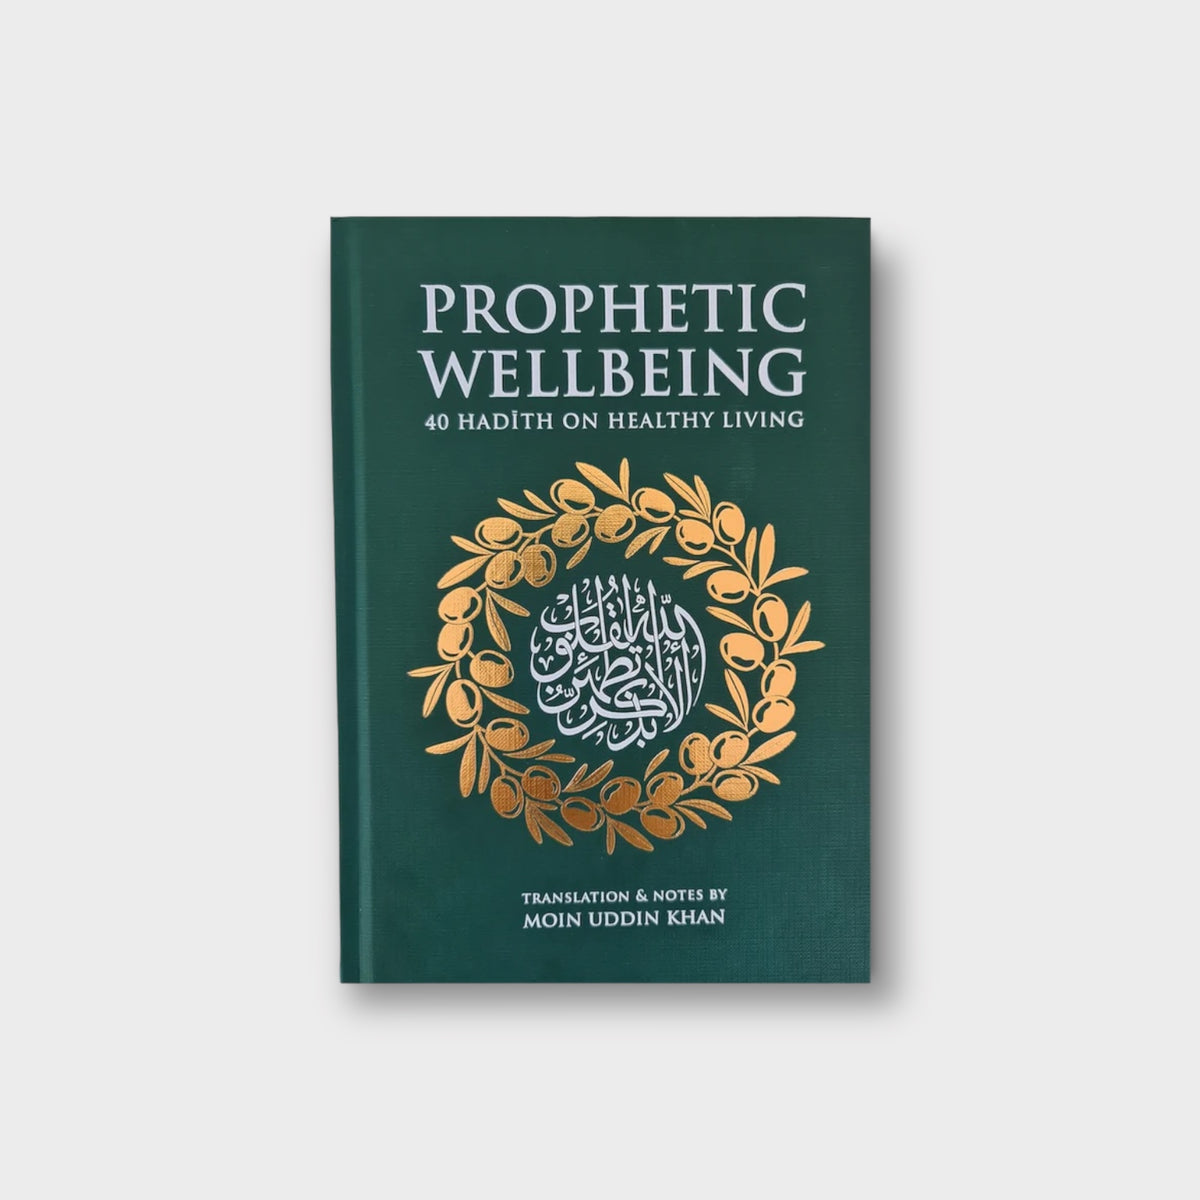 Prophetic Wellbeing - 40 Hadith on Healthy Living